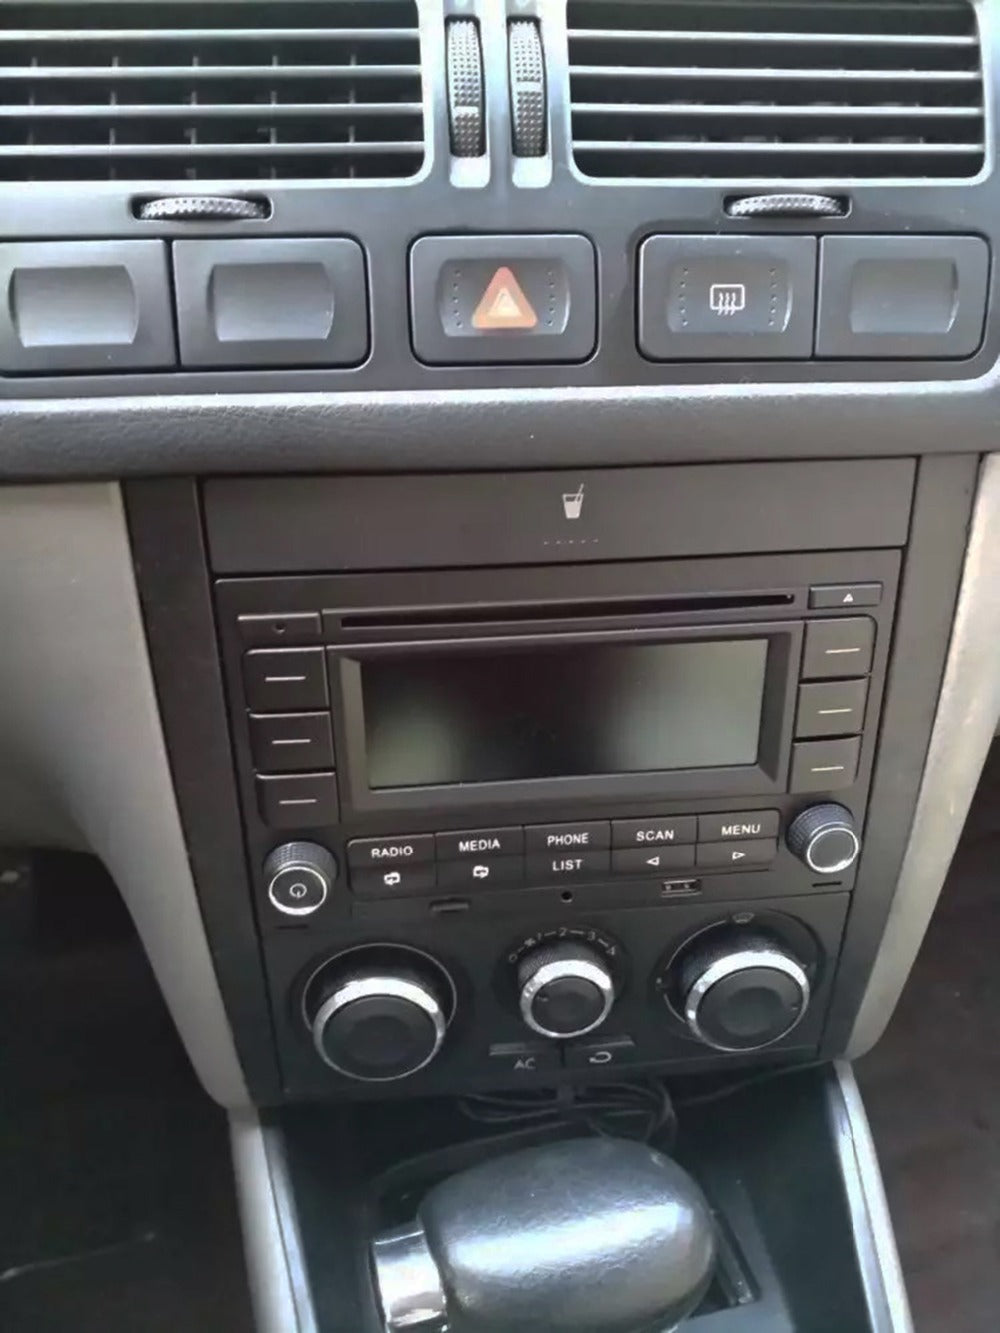 Auto Radio Bluetooth-kompatibel RCN210 CD Player USB MP3 AUX 31G 035 185  Für VW Polo 9N Golf jetta MK4 Passat B5 RCN 210 - AliExpress